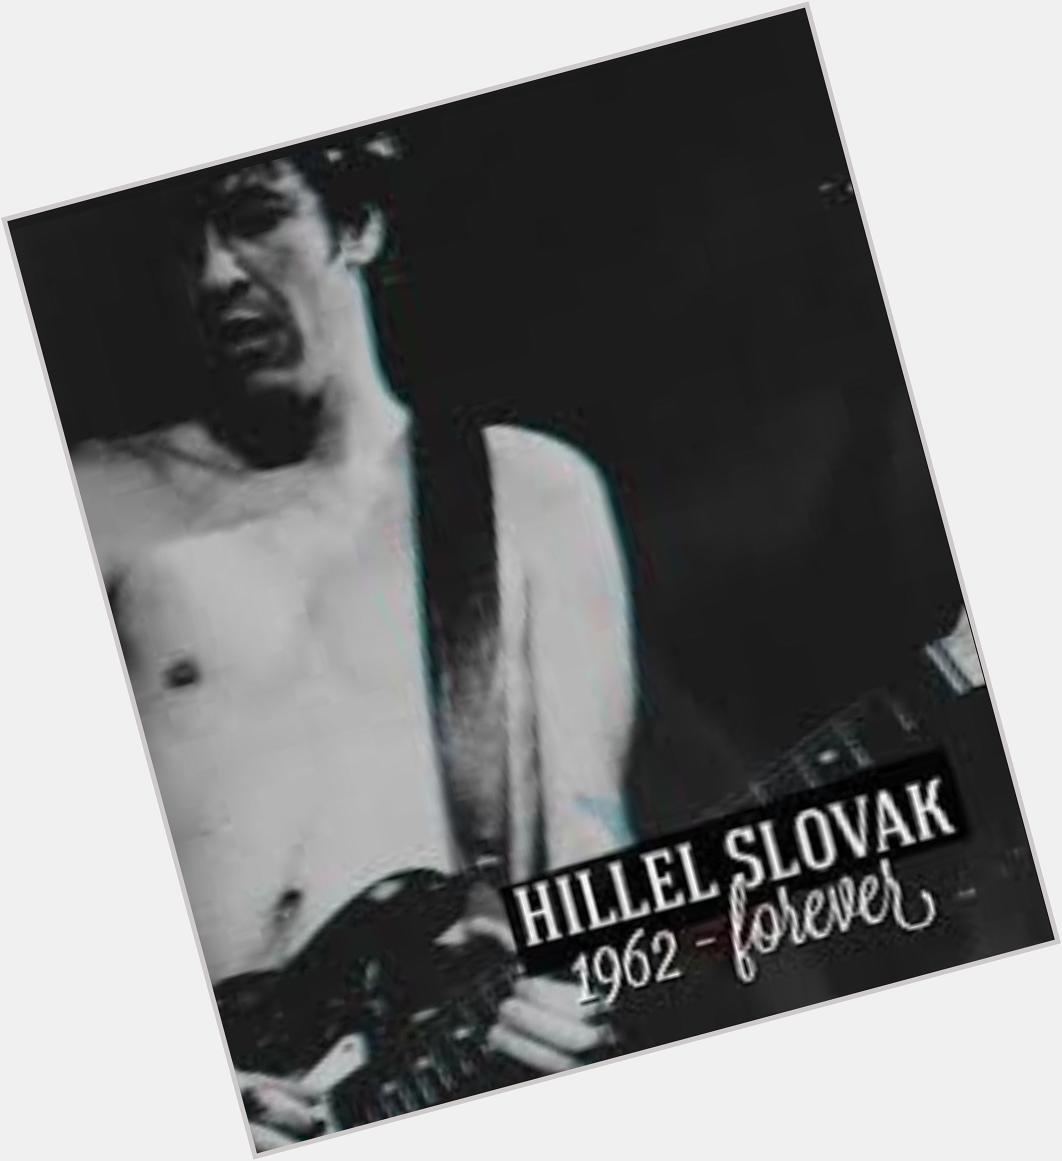 Happy Birthday Hillel Slovak 